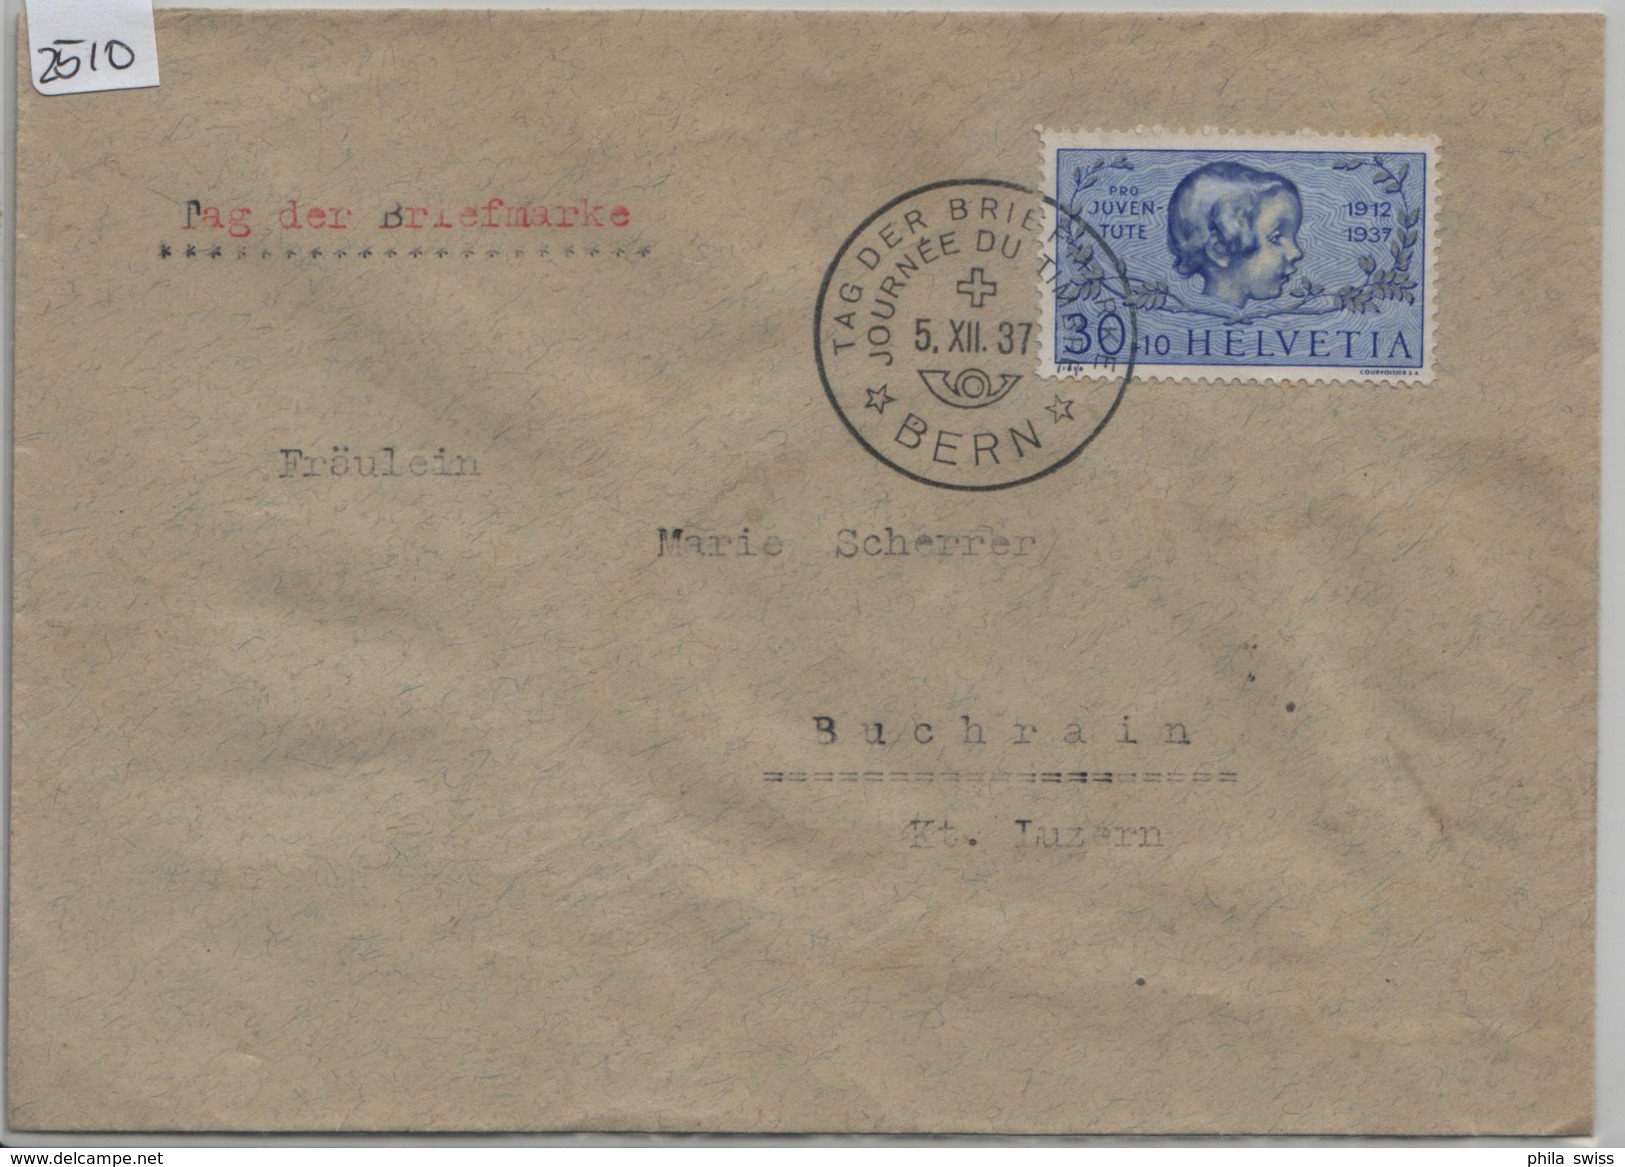 1937 Tag Der Briefmarke - Journee Du Timbre In Bern J84/317 Nach Buchrain 5.XII.37 - Postmark Collection